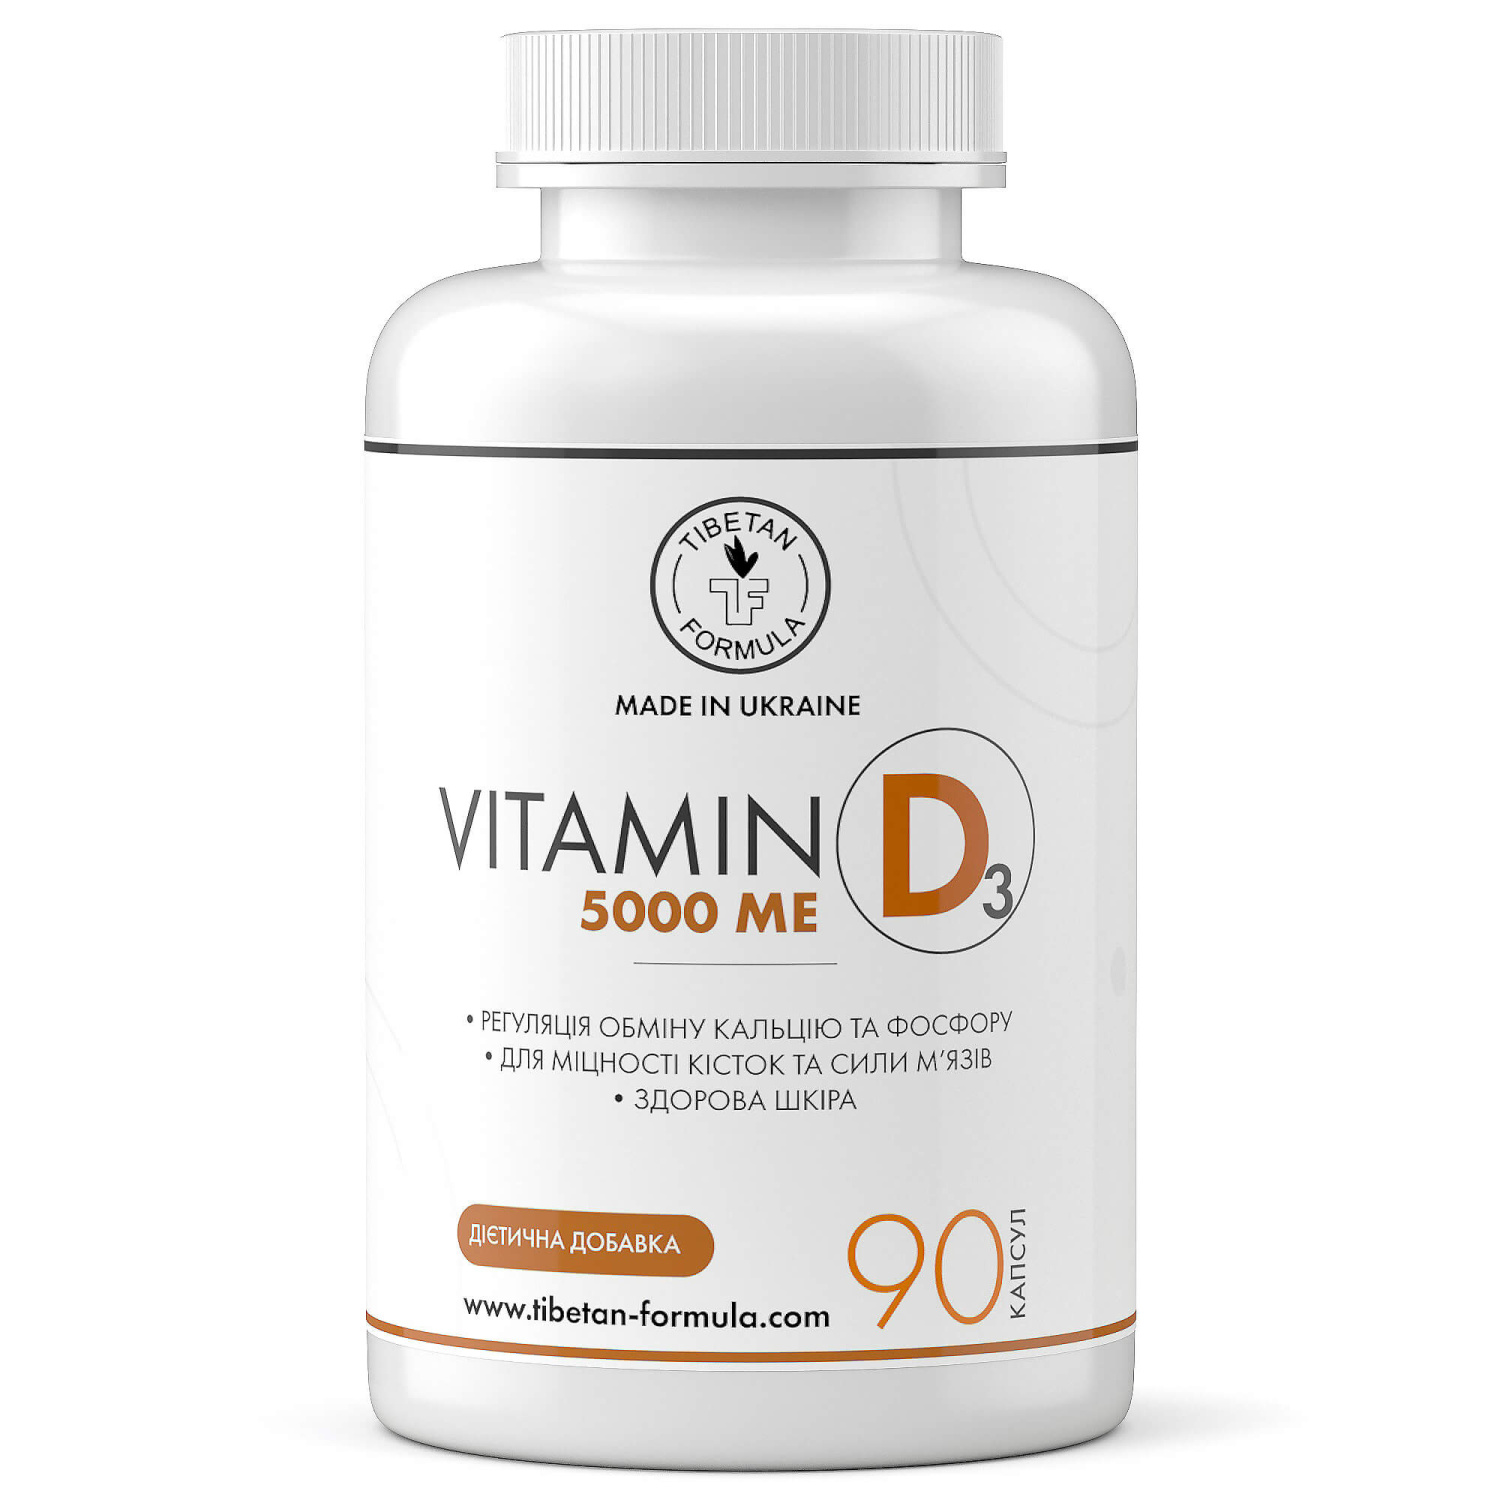 ДАНЯ - vitamin d 5000 me витамин д ua